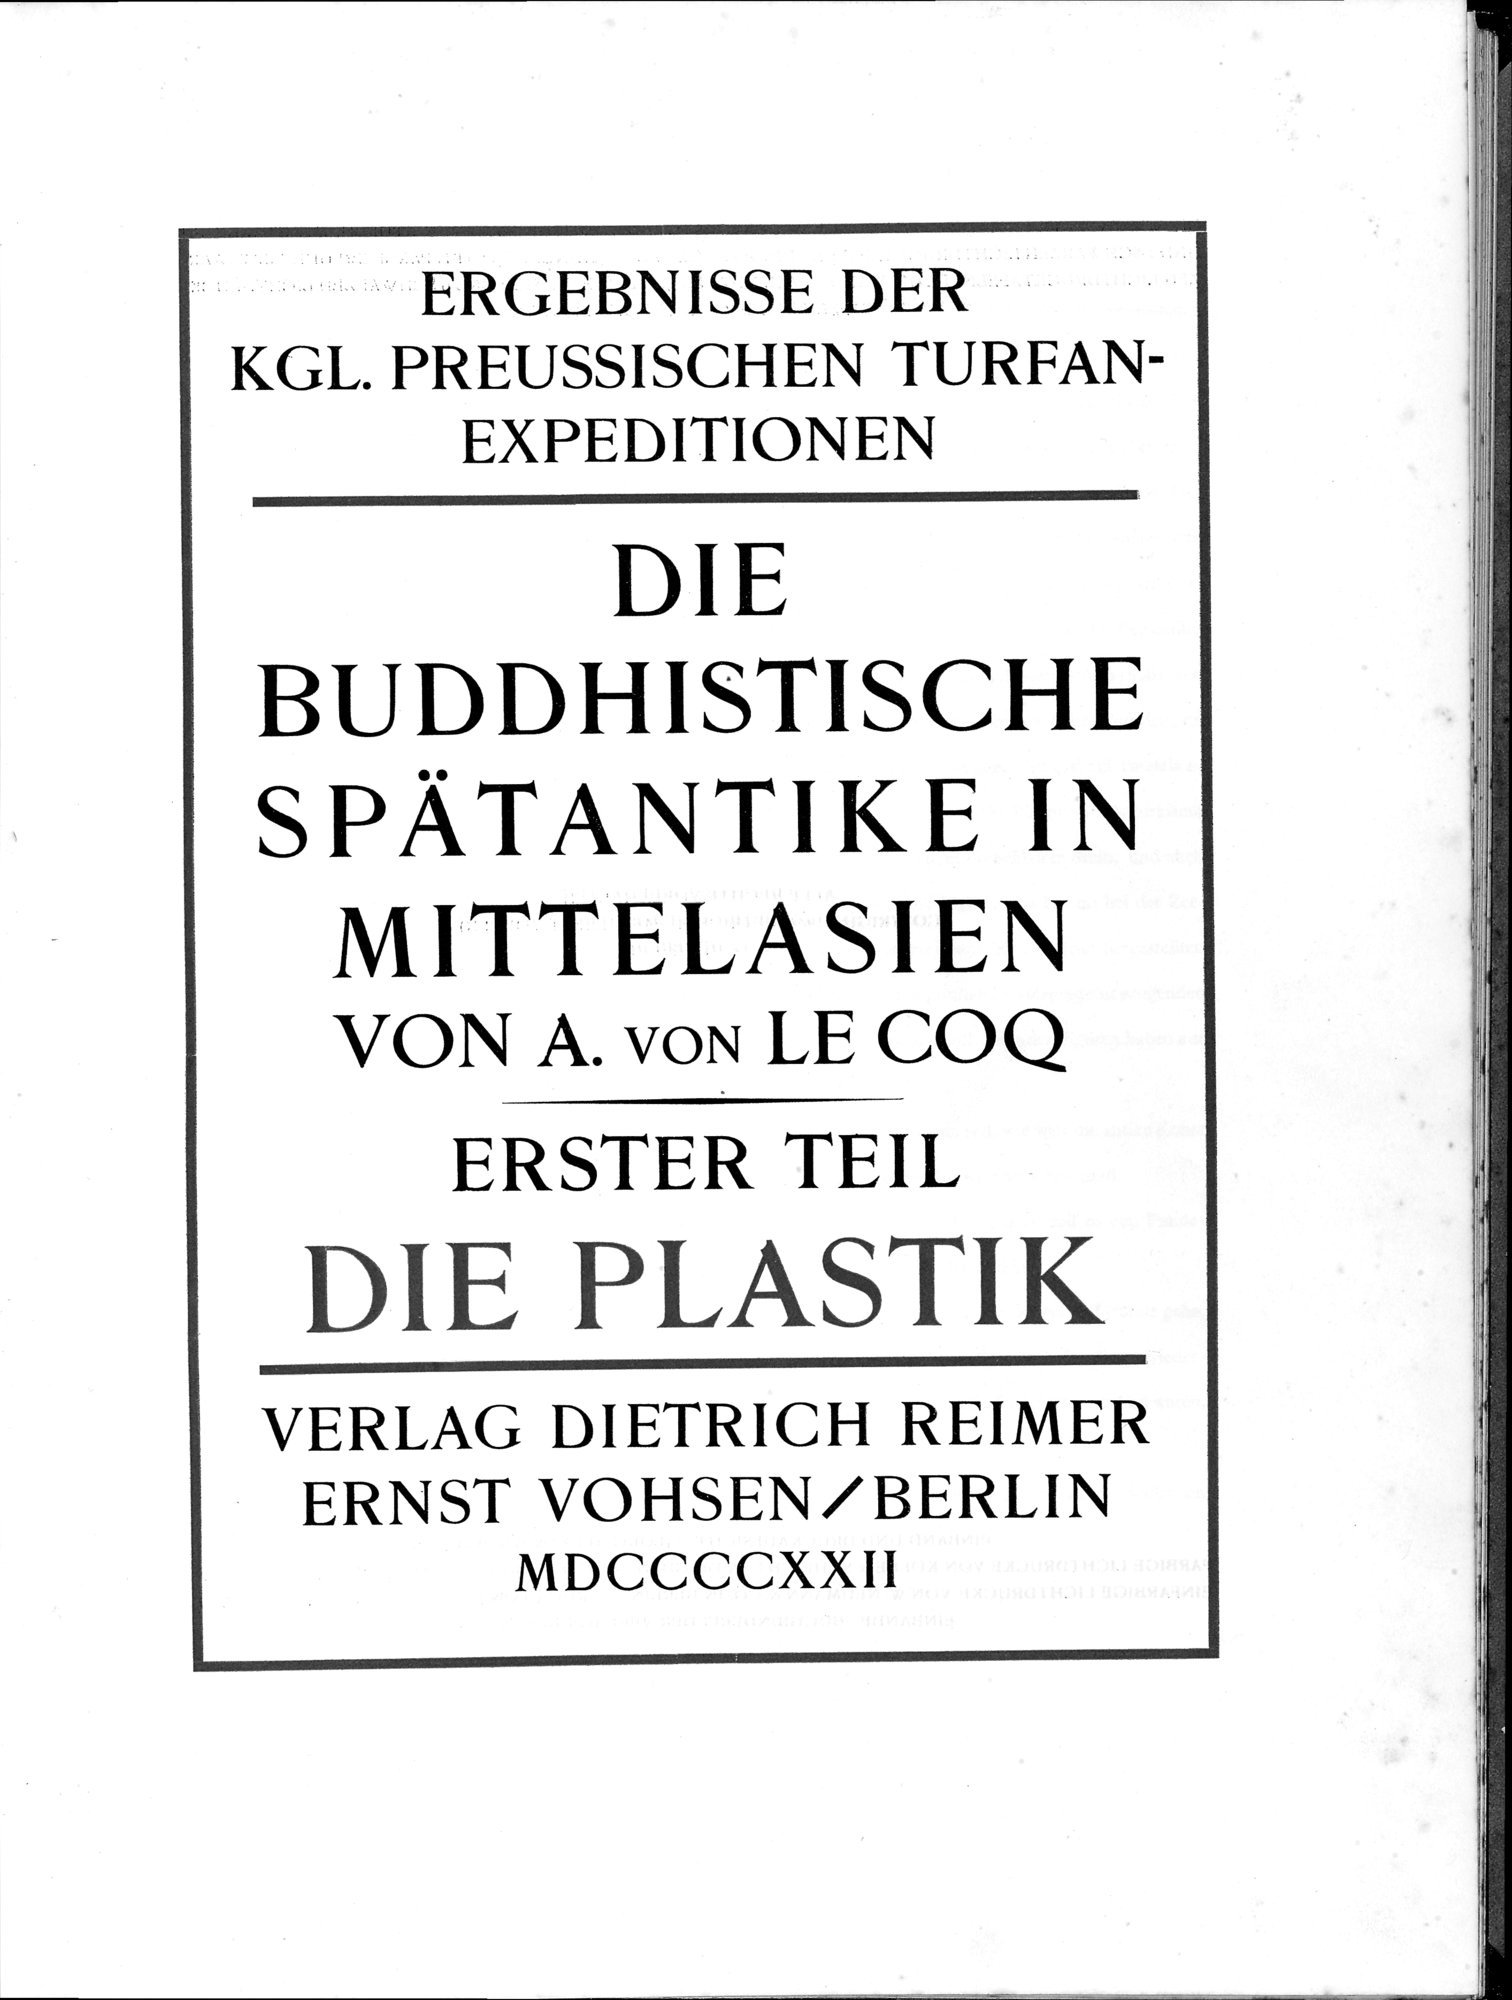 Die Buddhistische Spätantike in Mittelasien : vol.1 / Page 7 (Grayscale High Resolution Image)